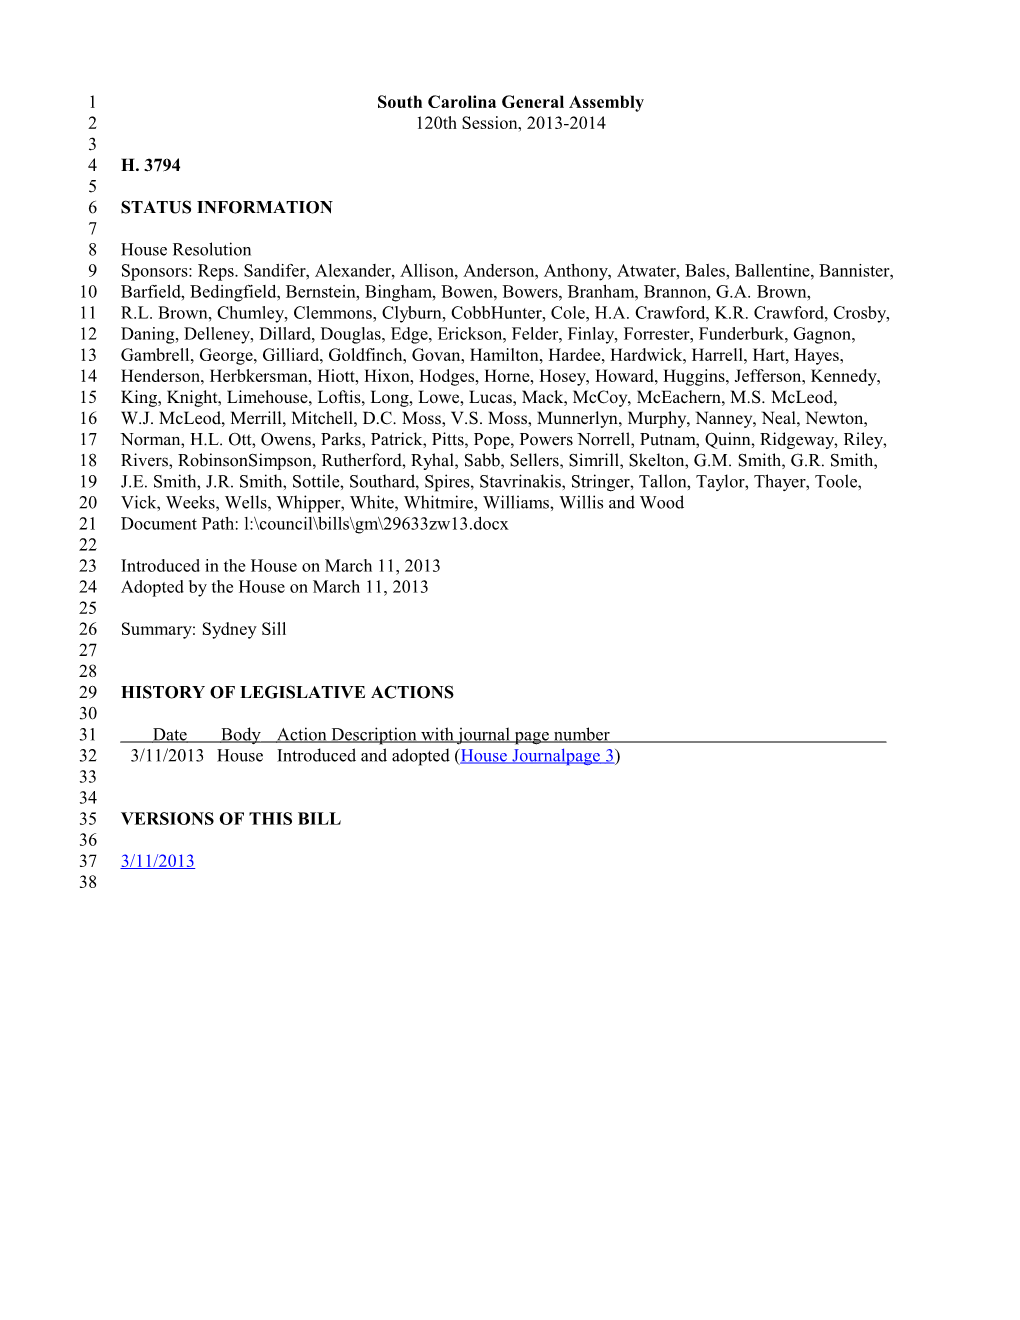 2013-2014 Bill 3794: Sydney Sill - South Carolina Legislature Online